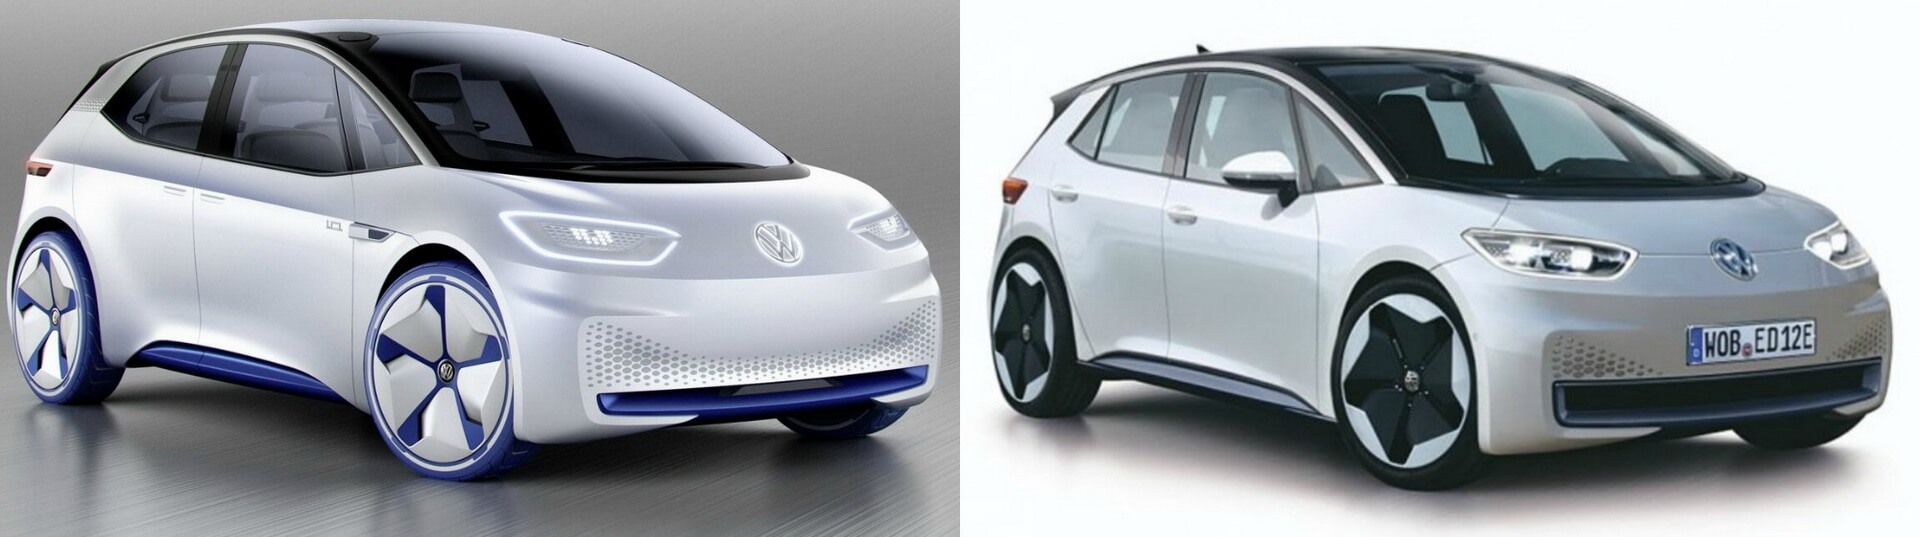 Концептуальная версия Volkswagen I.D. (слева) - производственный прототип Volkswagen NEO (справа)